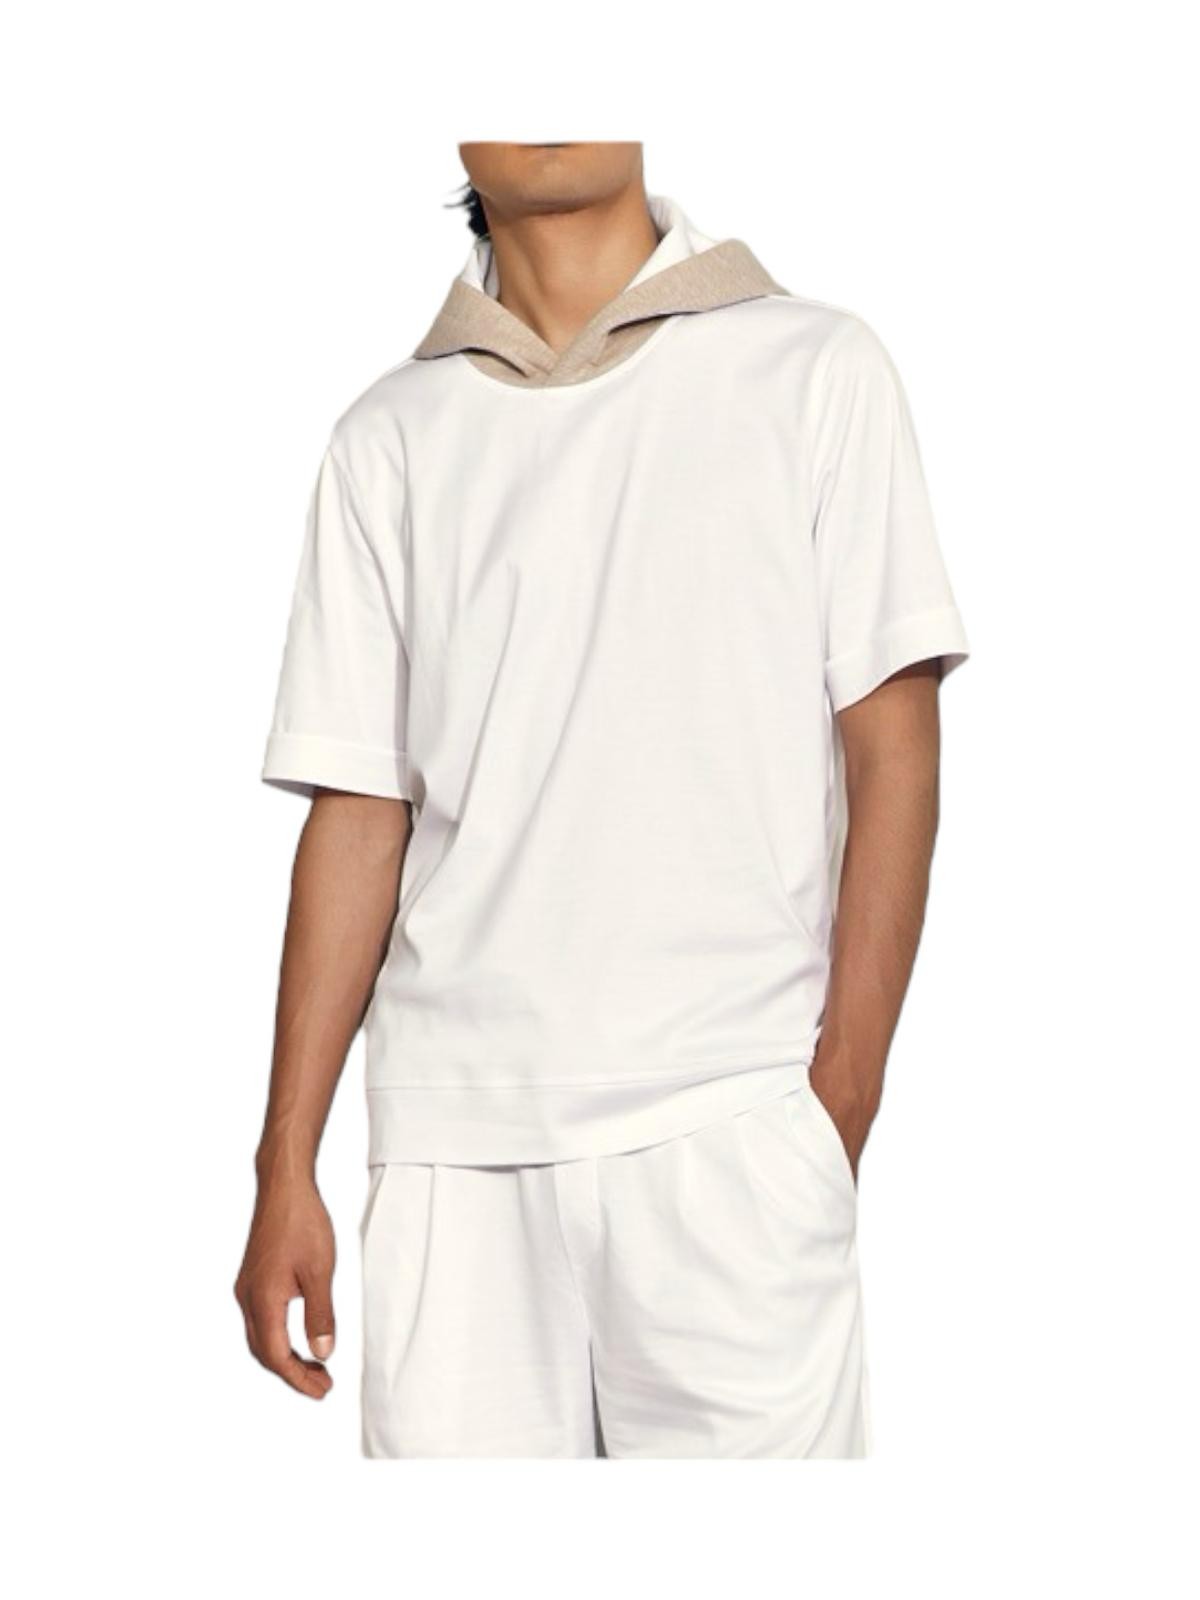 GRAN SASSO T-Shirt e Polo Uomo  60153/80702 005 Bianco